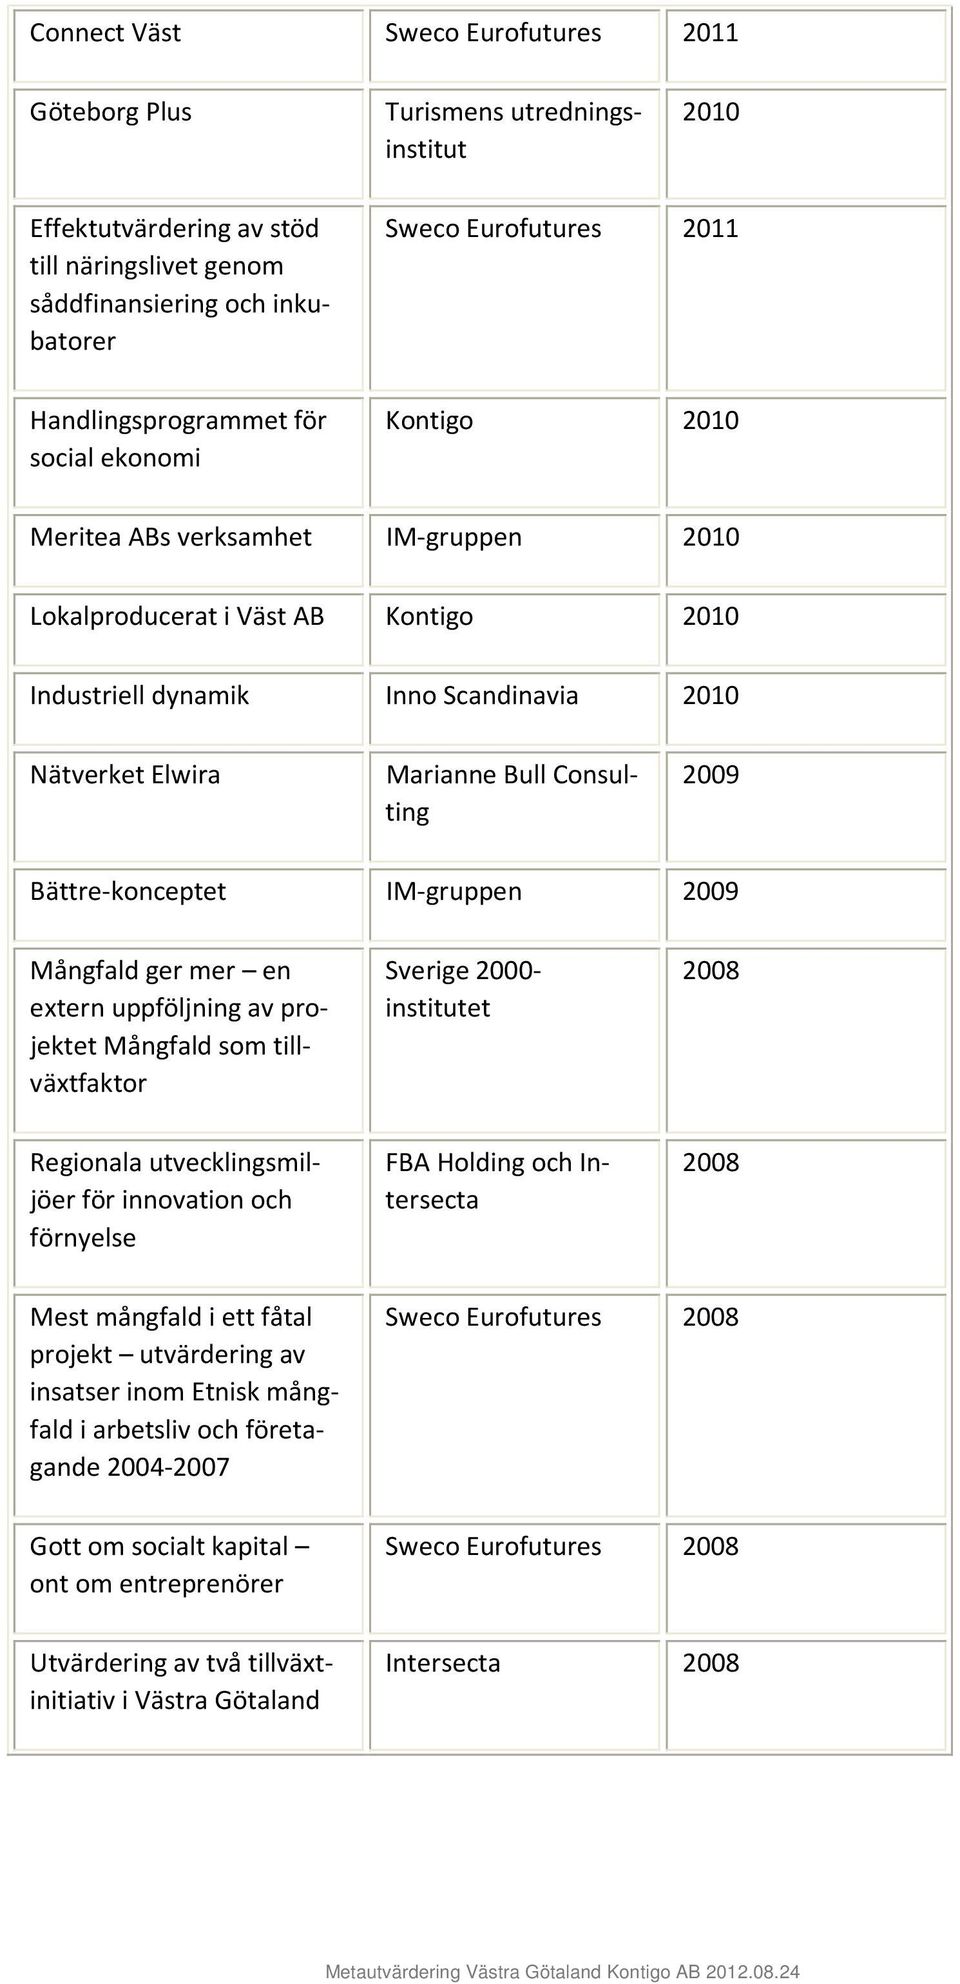 Bättre-konceptet IM-gruppen 2009 Mångfld ger mer en extern uppföljning v projektet Mångfld som tillväxtfktor Sverige 2000- institutet 2008 Regionl utvecklingsmiljöer för innovtion och förnyelse FBA